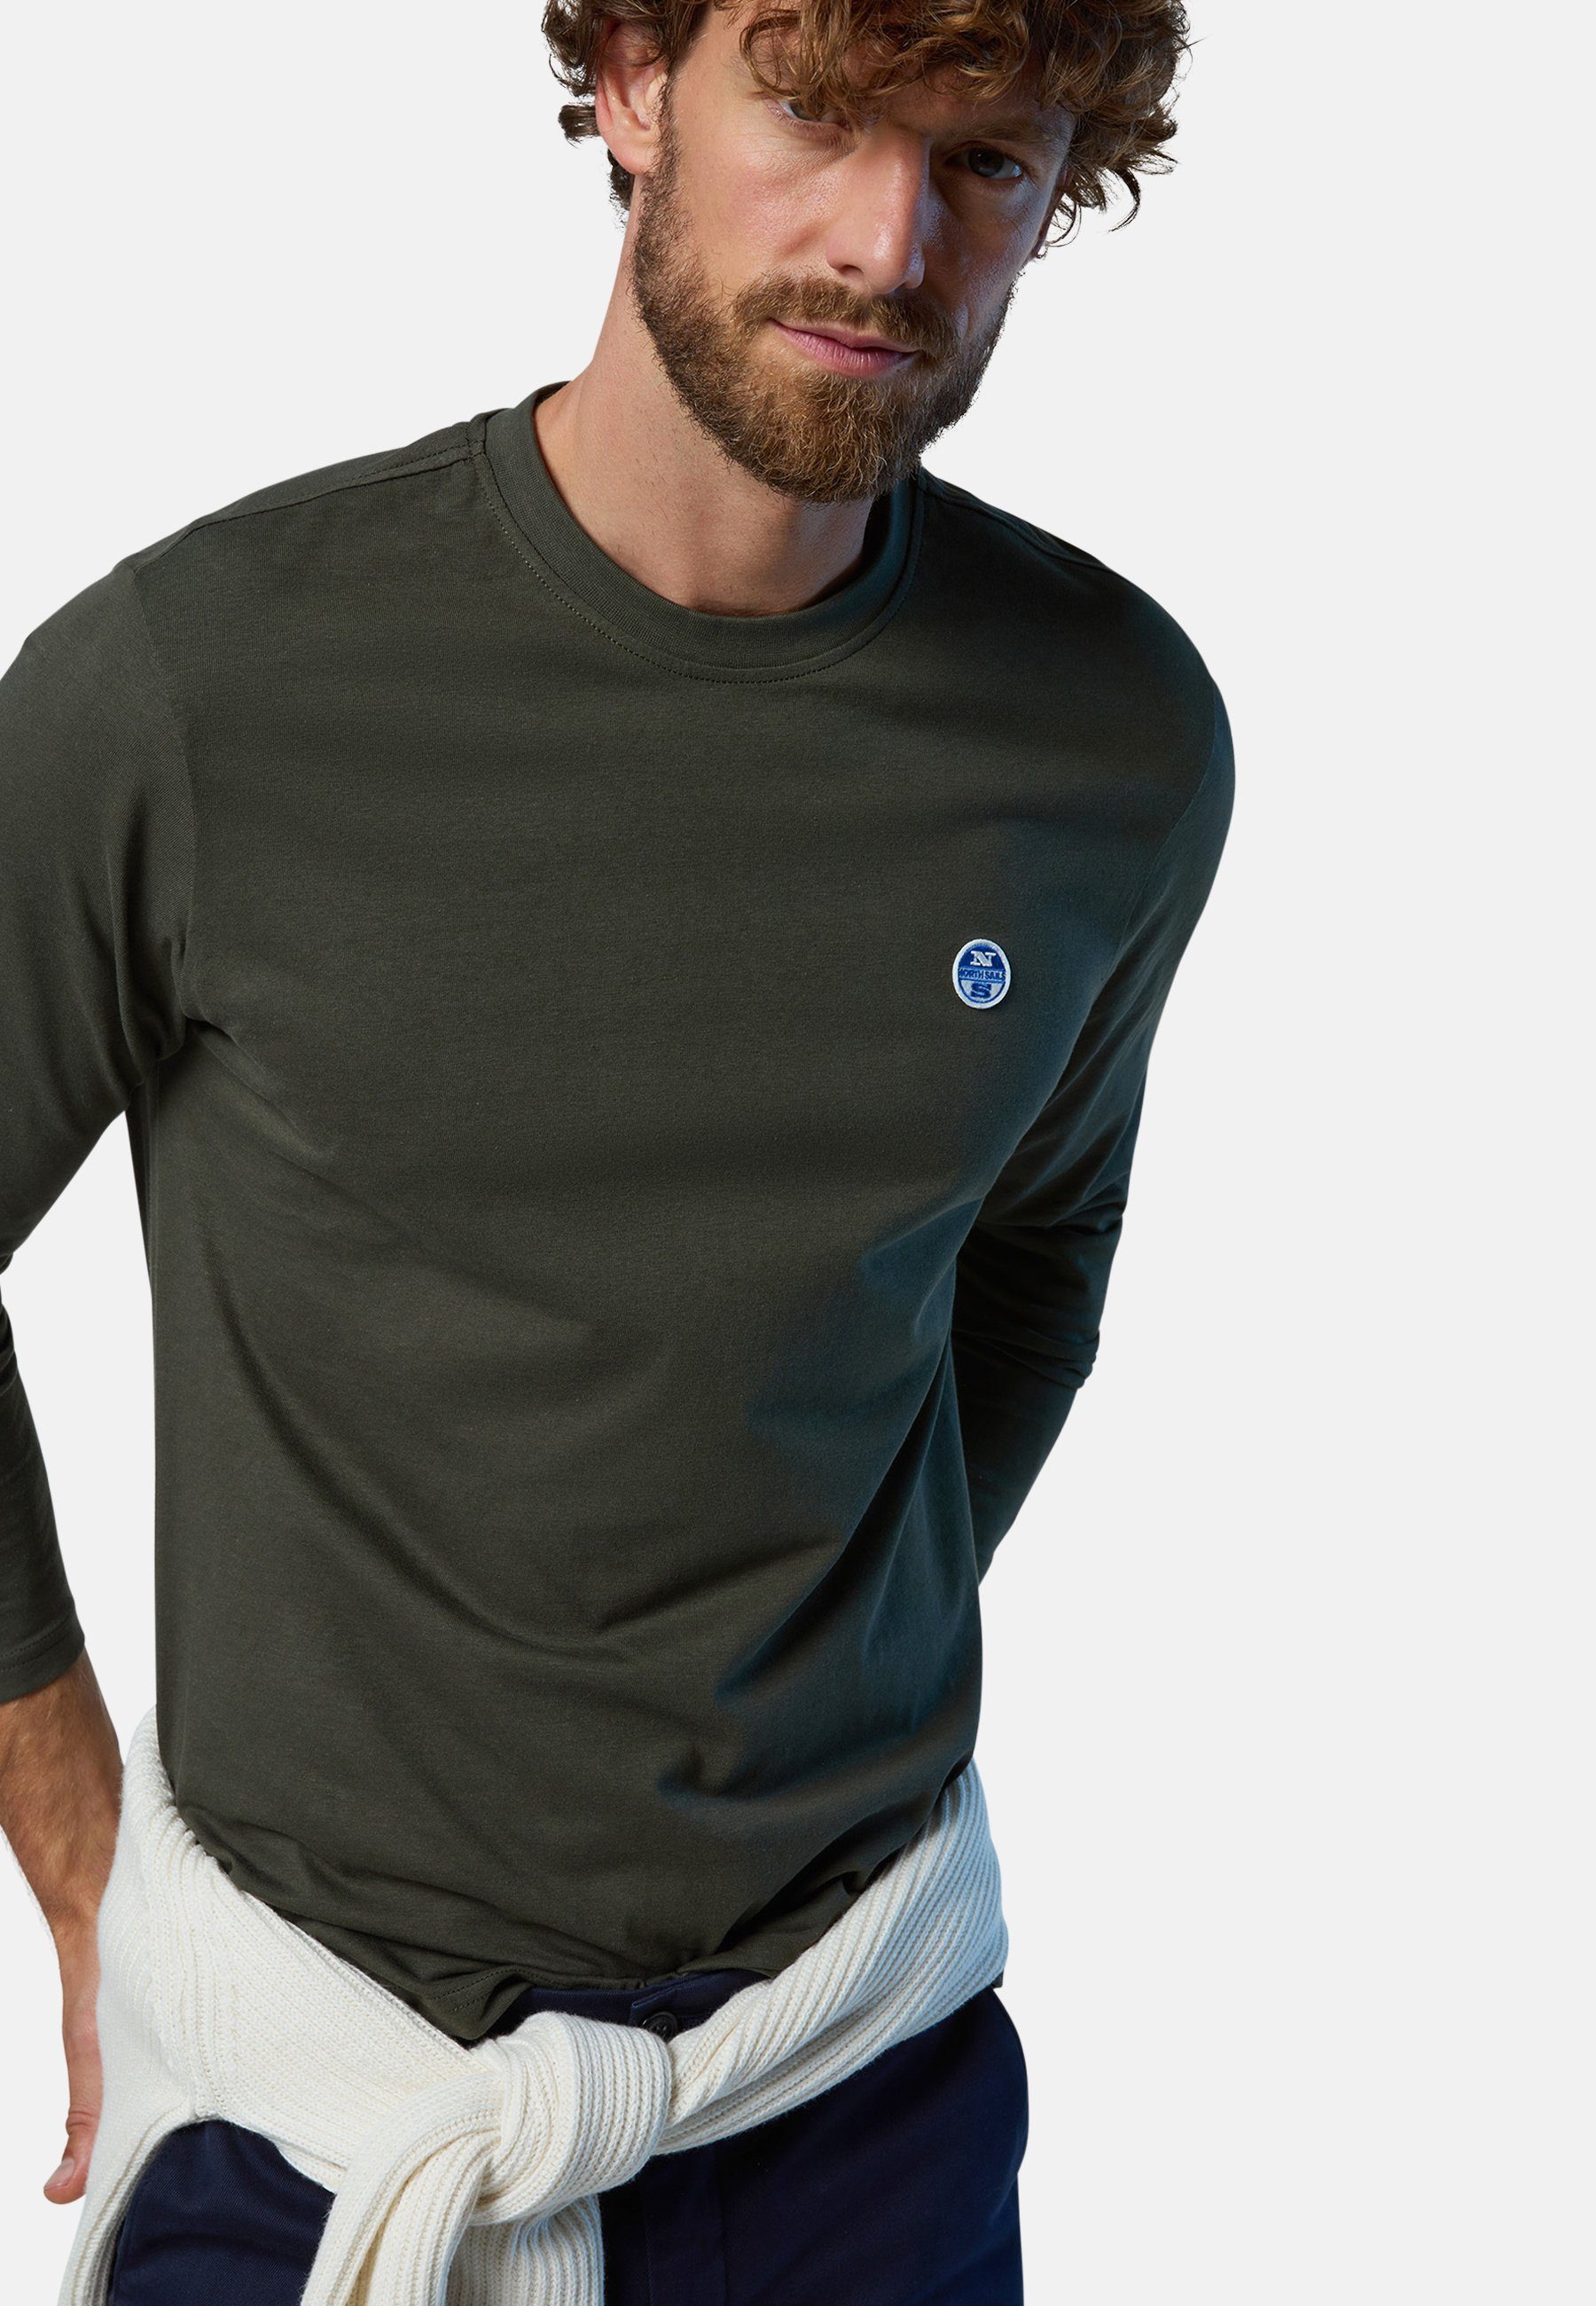 mit T-Shirt Design green Langarm-T-Shirt mit Sails North klassischem Logo-Aufnäher